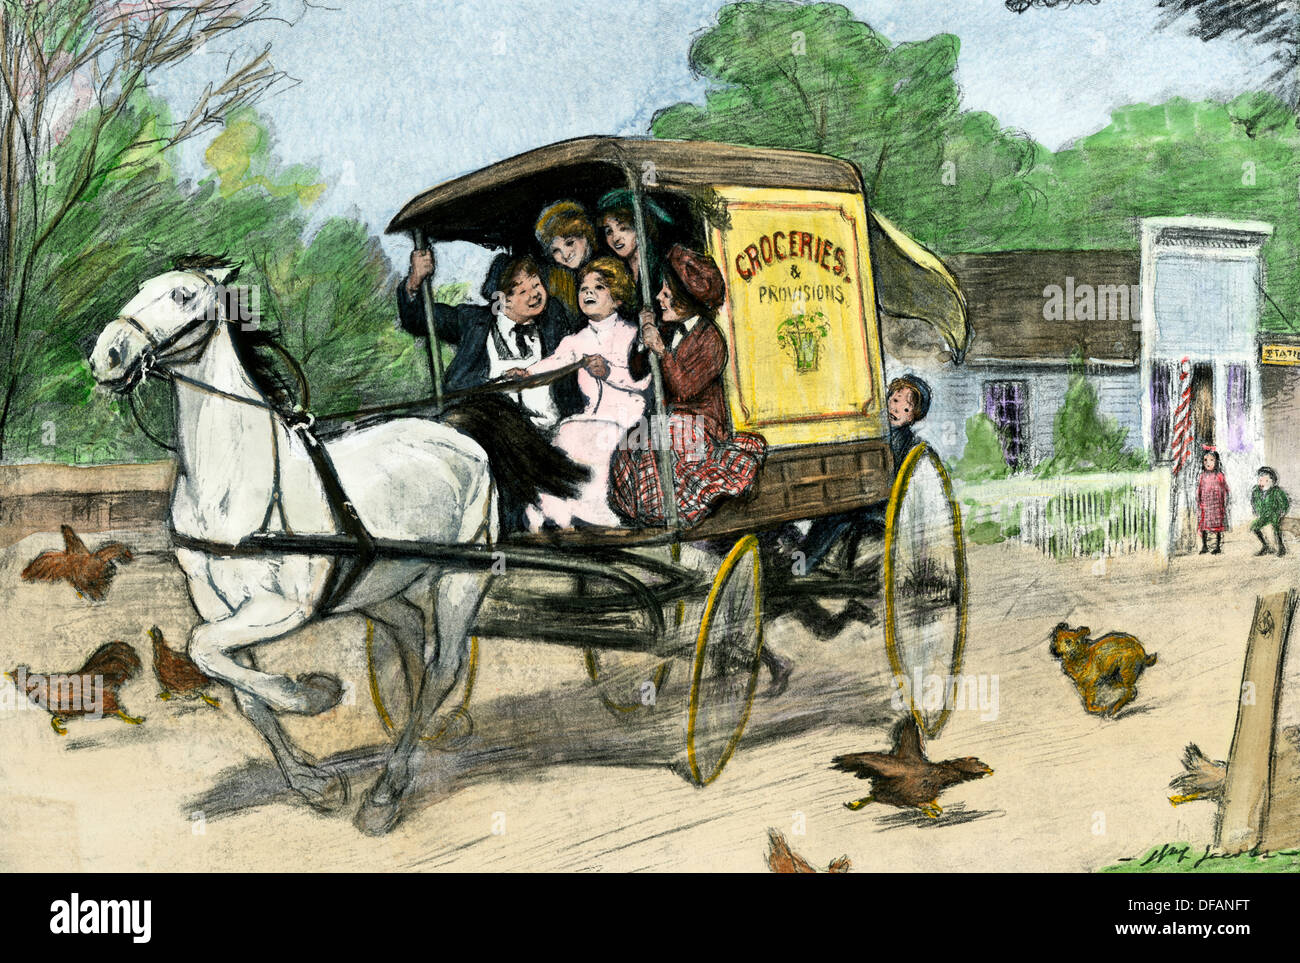 Junge Freude - Reiter racing ein pferdefuhrwerk Lebensmittelgeschäft wagen durch ein Dorf, Anfang 1900. Hand - farbige Holzschnitt Stockfoto